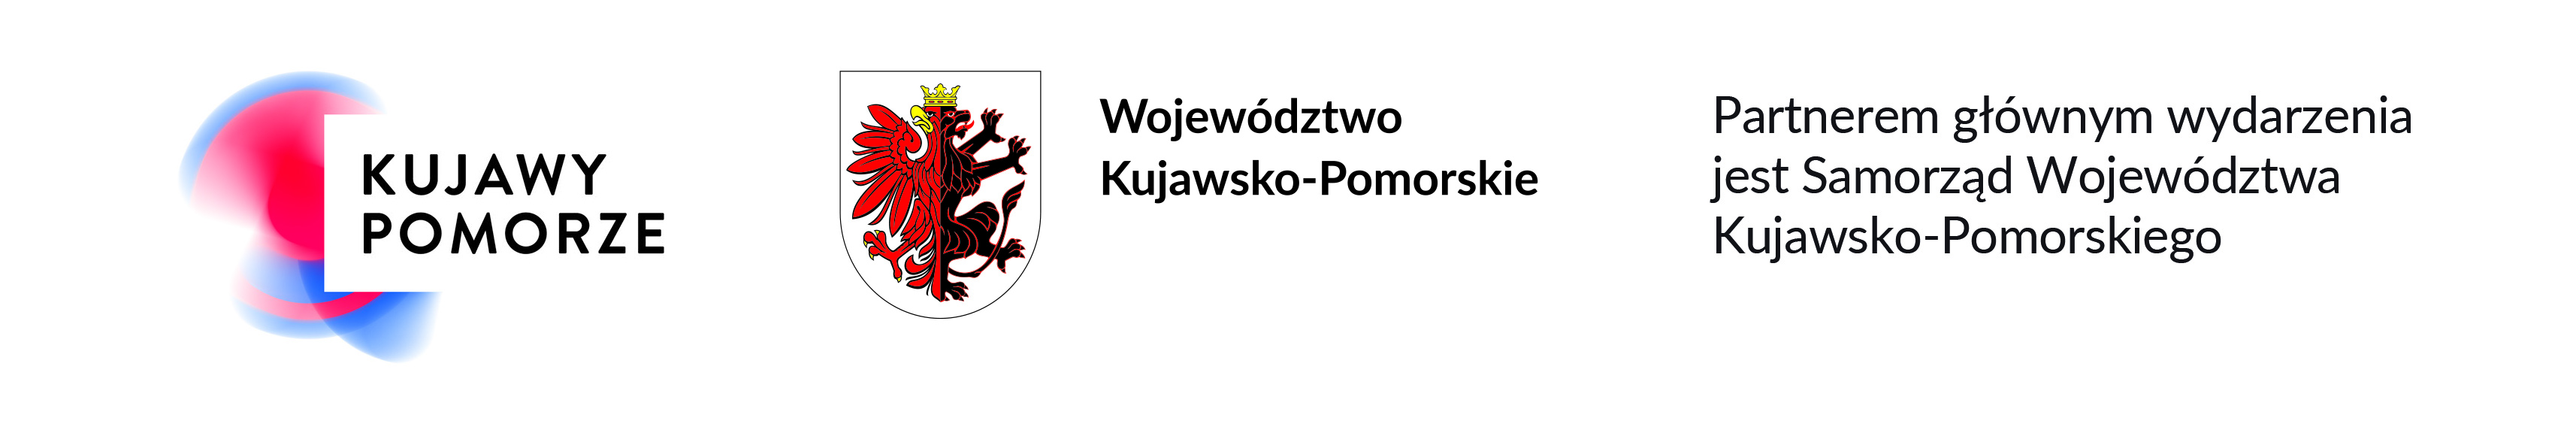 Logotyp i herb województwa kujawsko-pomorkisego i zapis Partnerem głównym wydarzenia jest Wojwództwo Kujawsko-Pomorskie